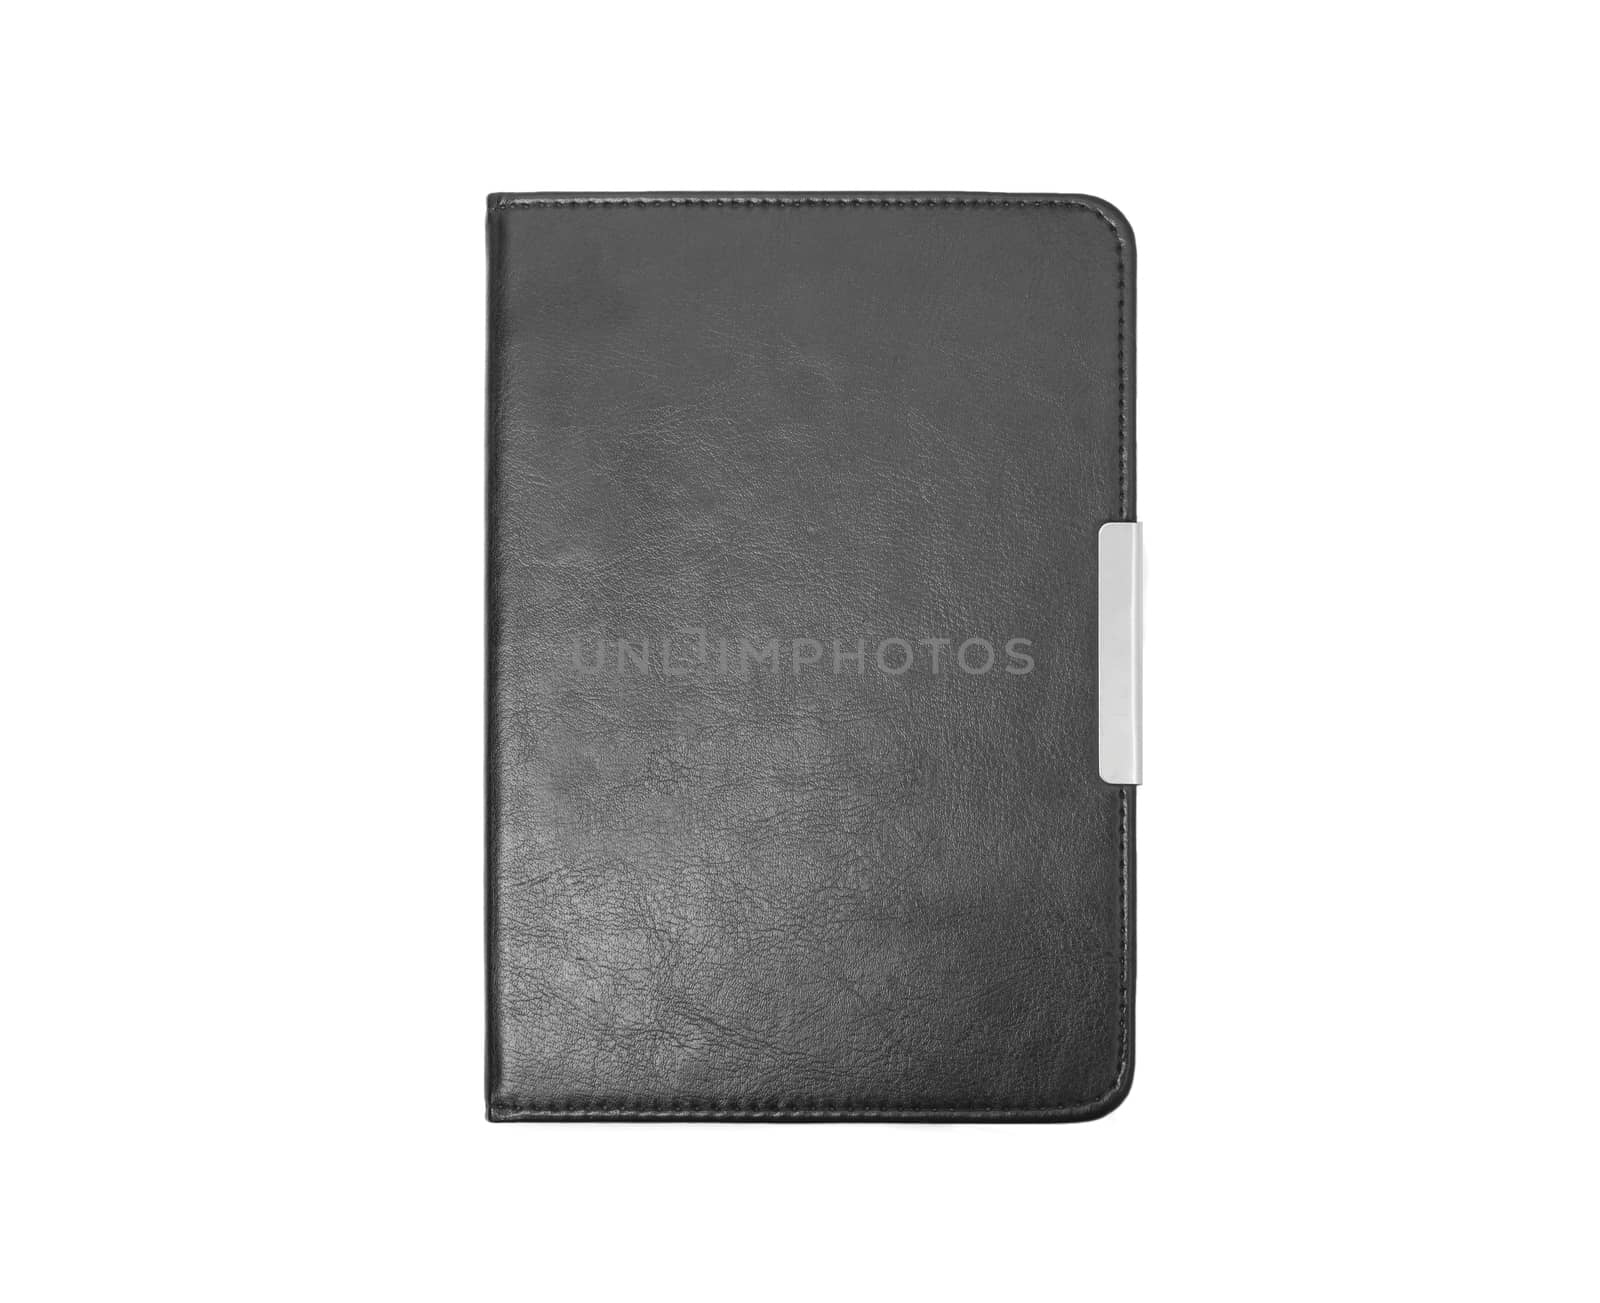 Black leather folder isolated on white background by SlayCer